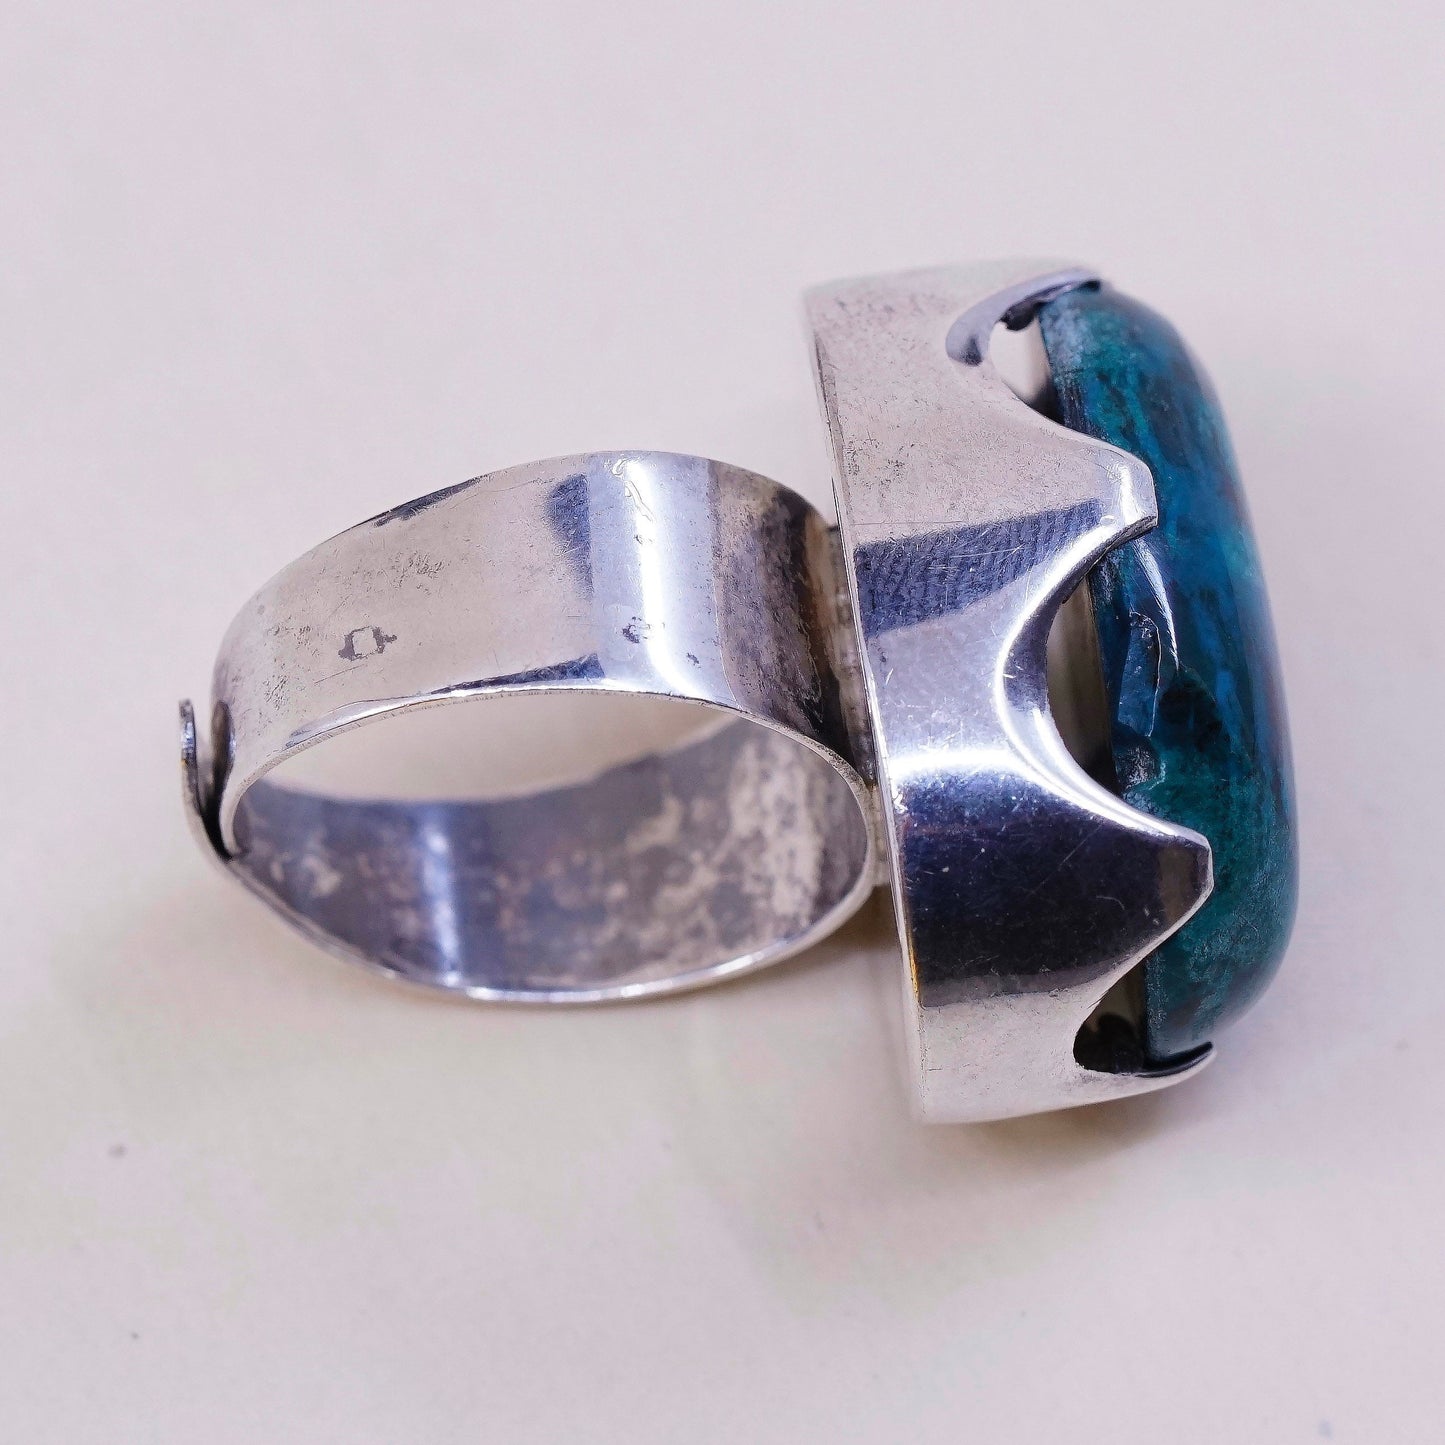 Size adjustable, vtg Israel handmade sterling silver statement w/ jade